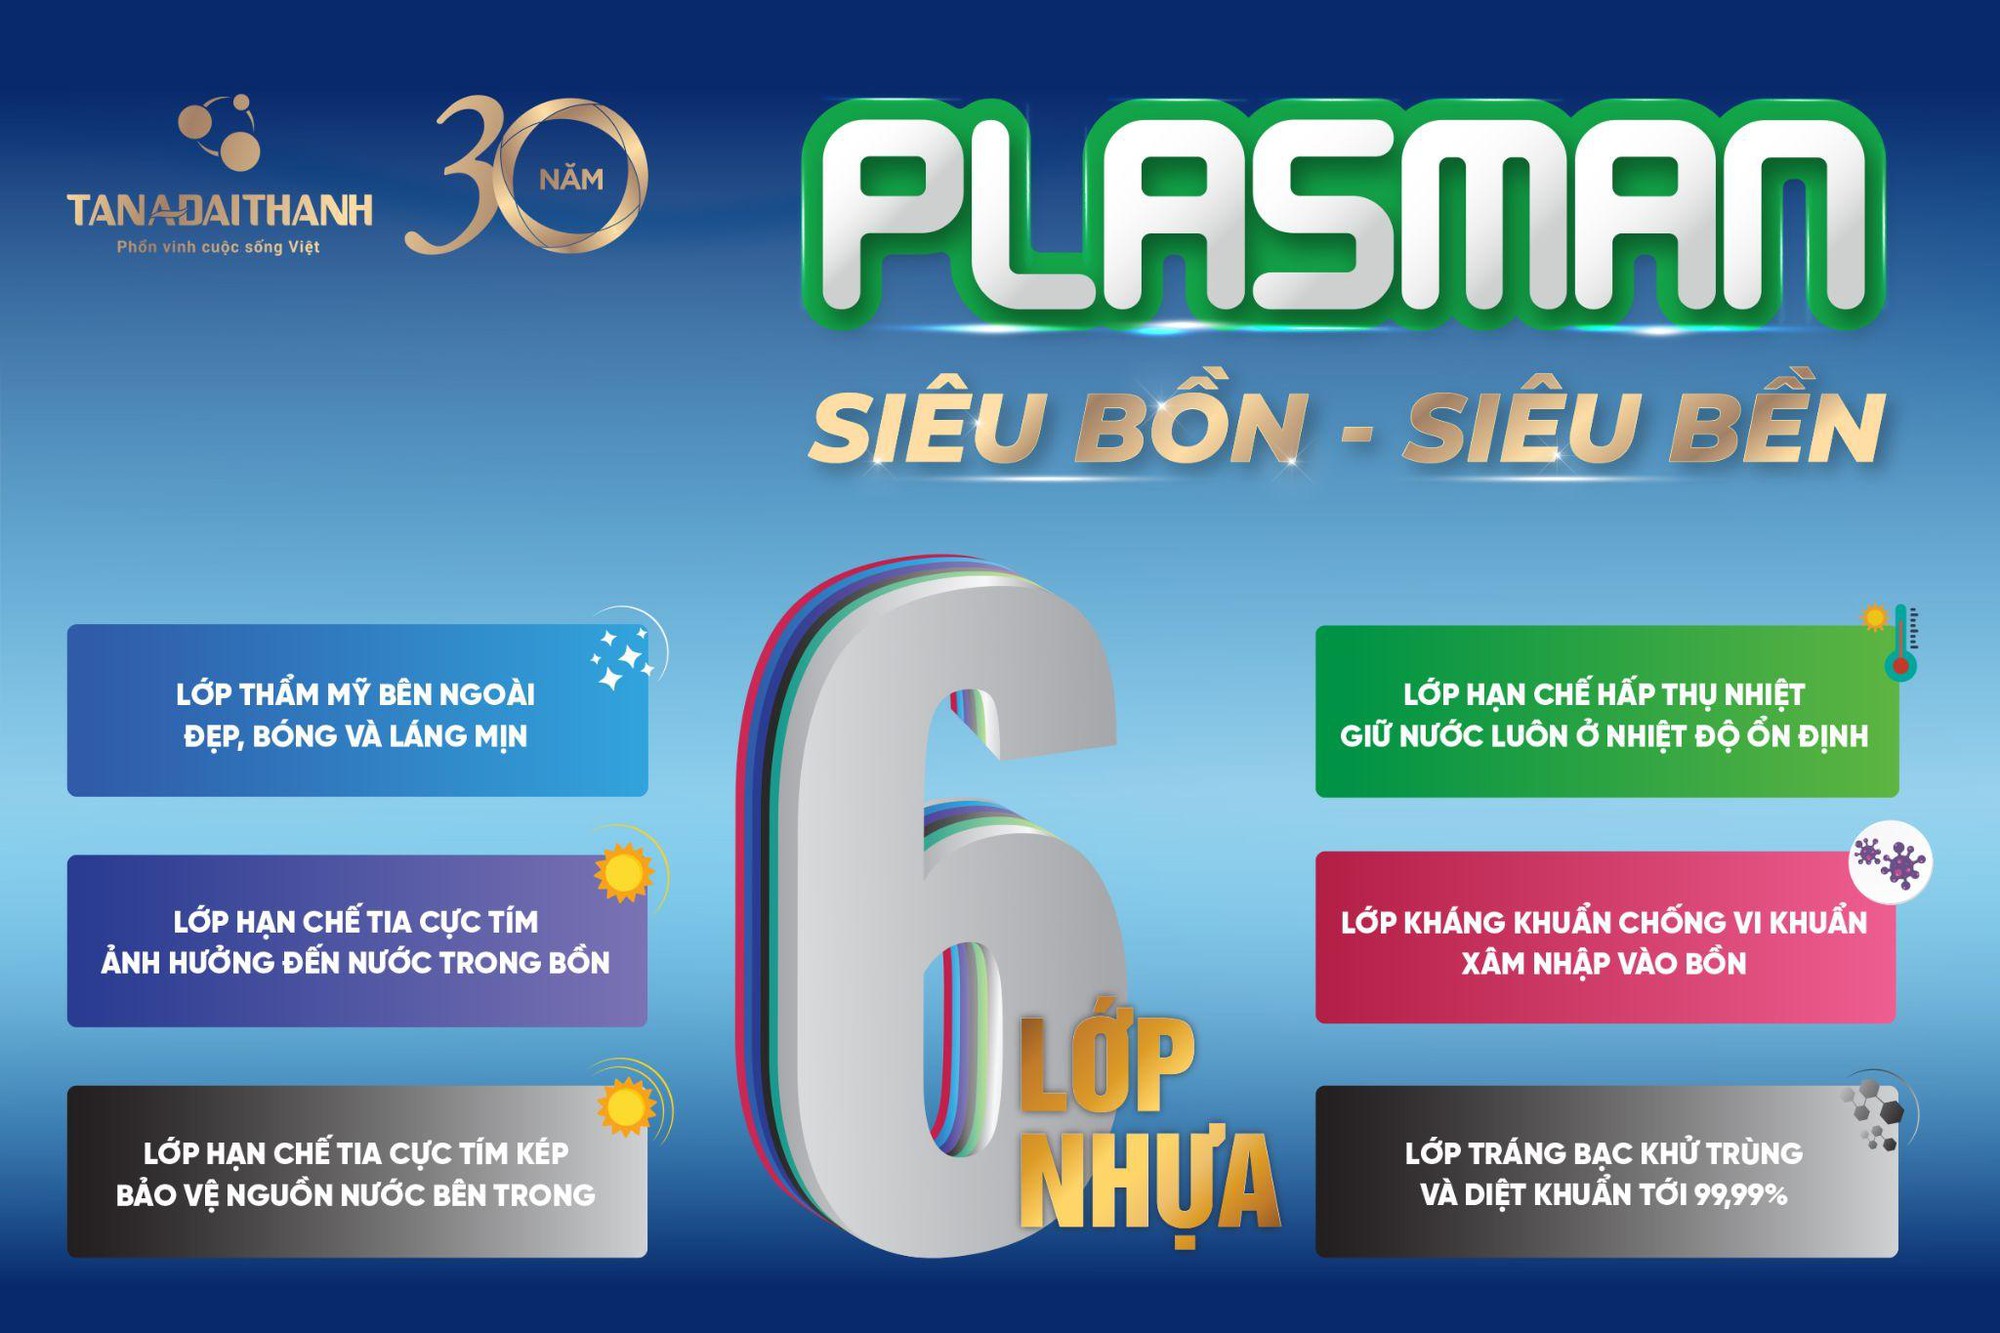 Trải nghiệm “Thử thách độ bền cùng siêu bồn Plasman” gây ấn tượng đặc biệt - Ảnh 6.